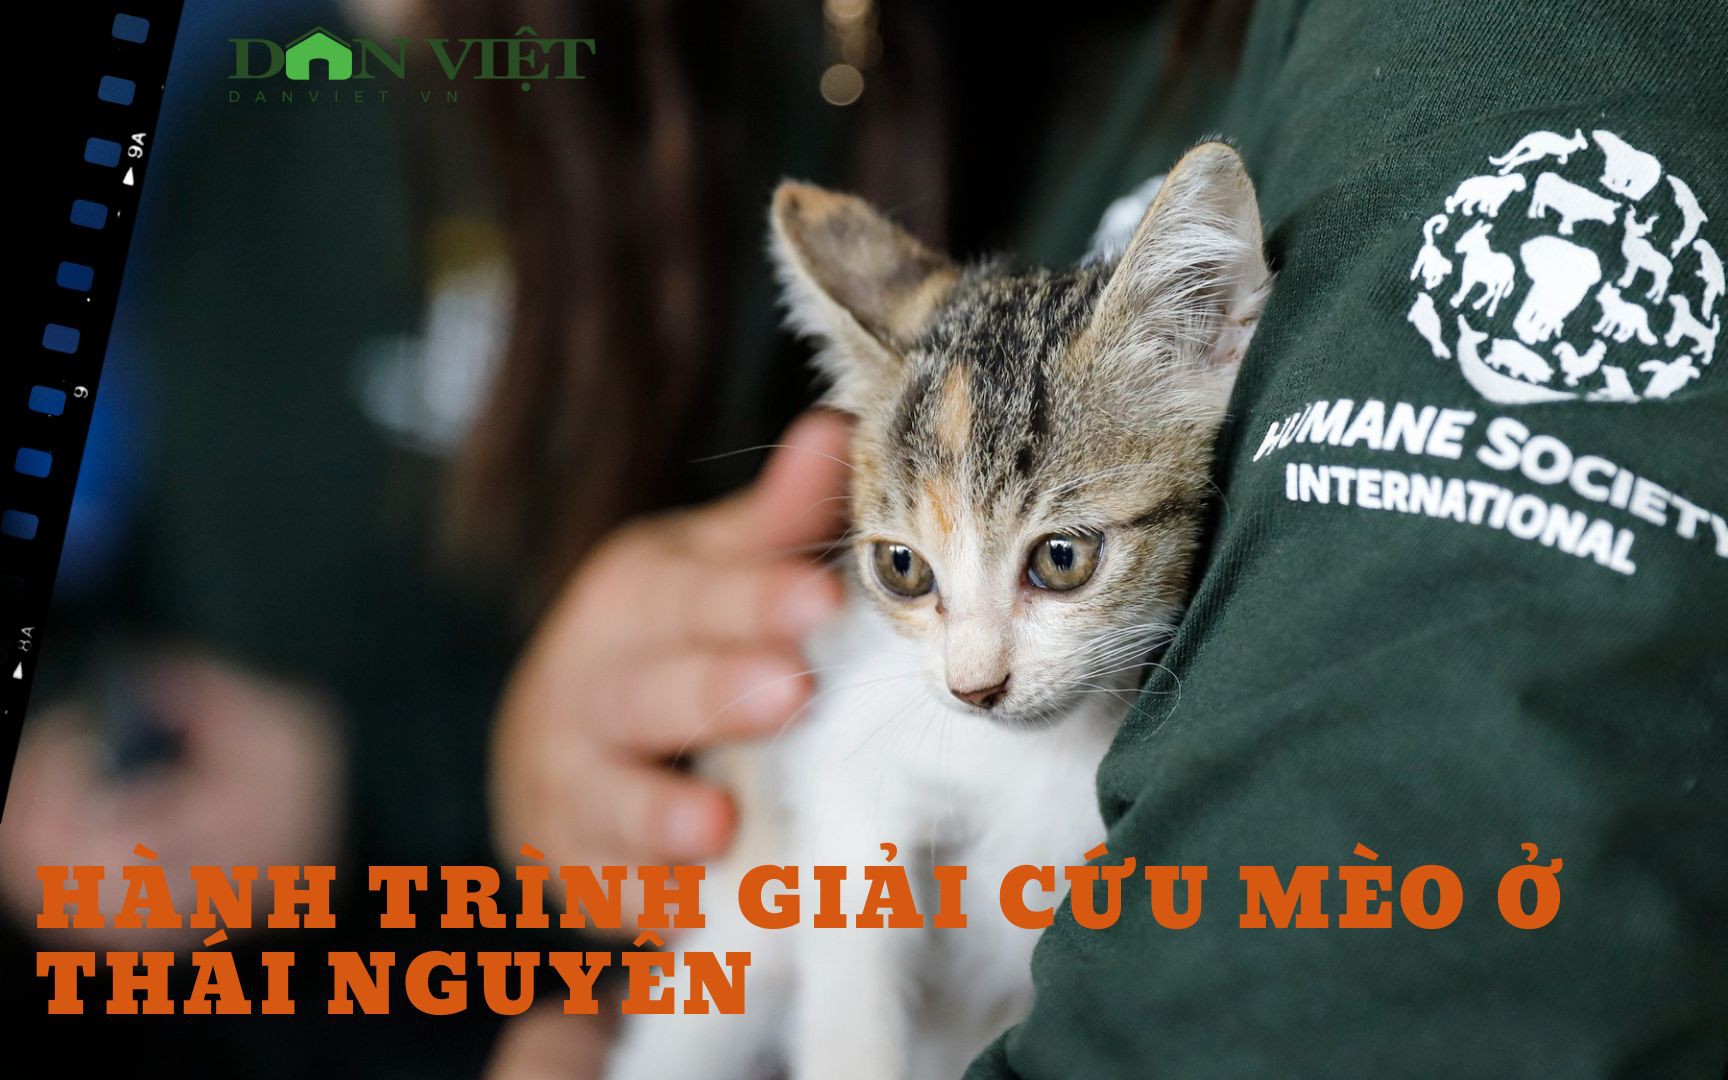 Giải cứu, đóng cửa vĩnh viễn lò mổ thịt mèo với quy mô 300 con/tháng ở Thái Nguyên